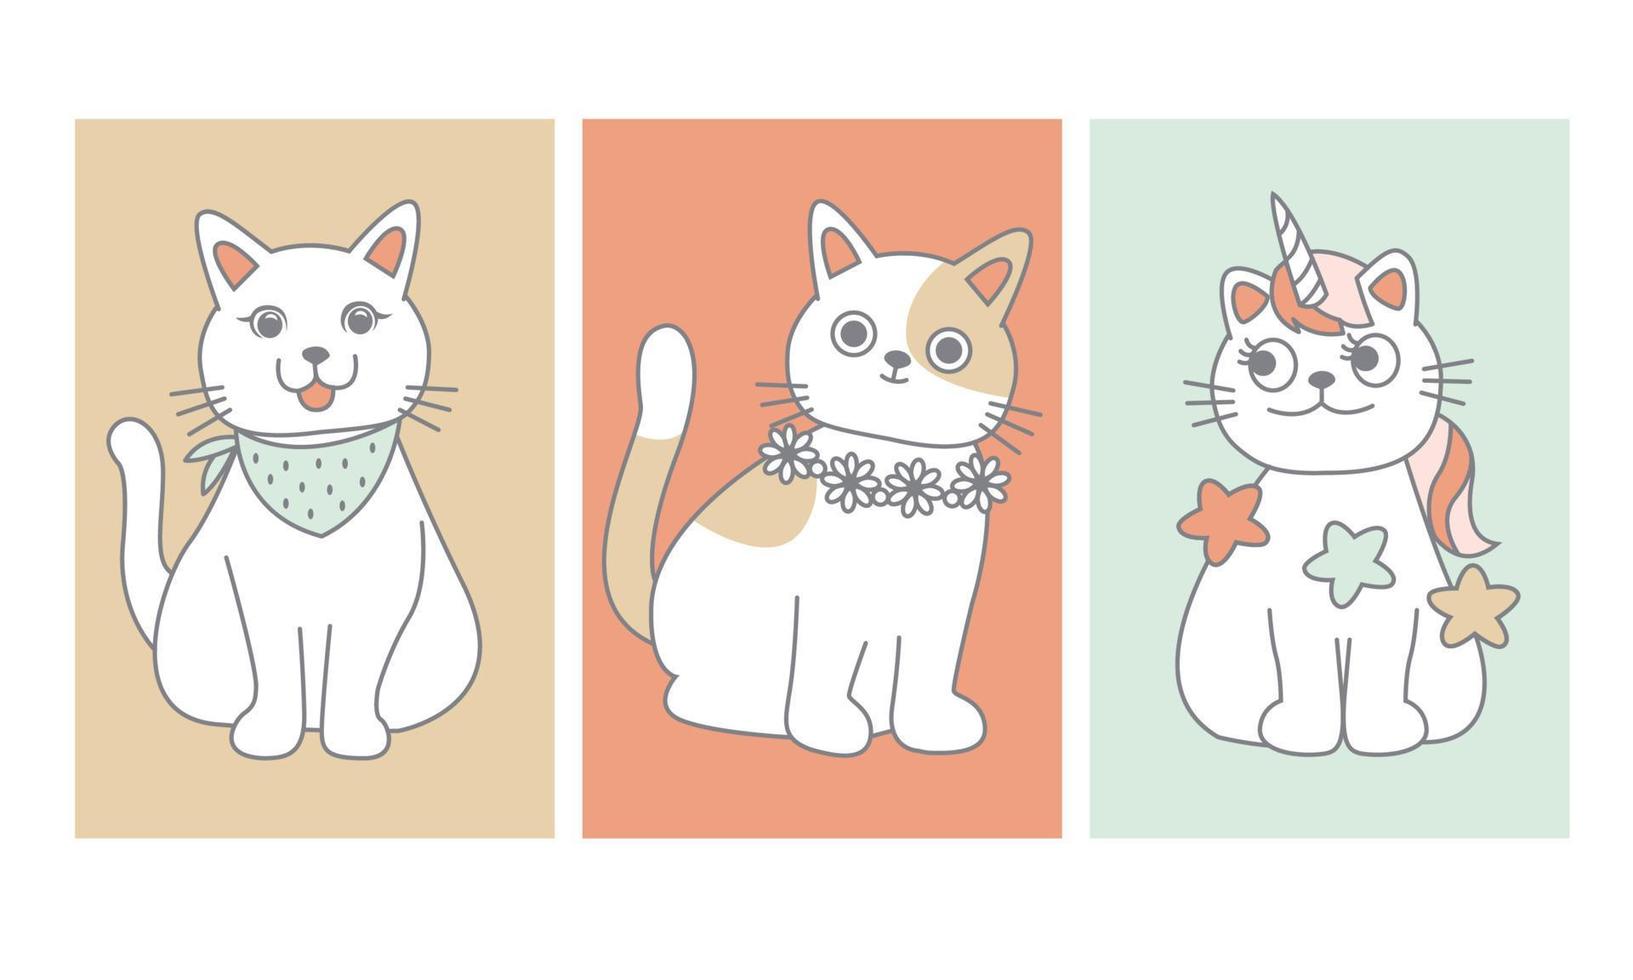 katze niedliche zeichentrickfigur. weiße Katzen auf pastellfarbenem Hintergrund. Katze ist ein Einhorn. trägt eine Blumenkette und einen Schal. design für grußkarten, dekorationen, illustrationen, t-shirt. vektor